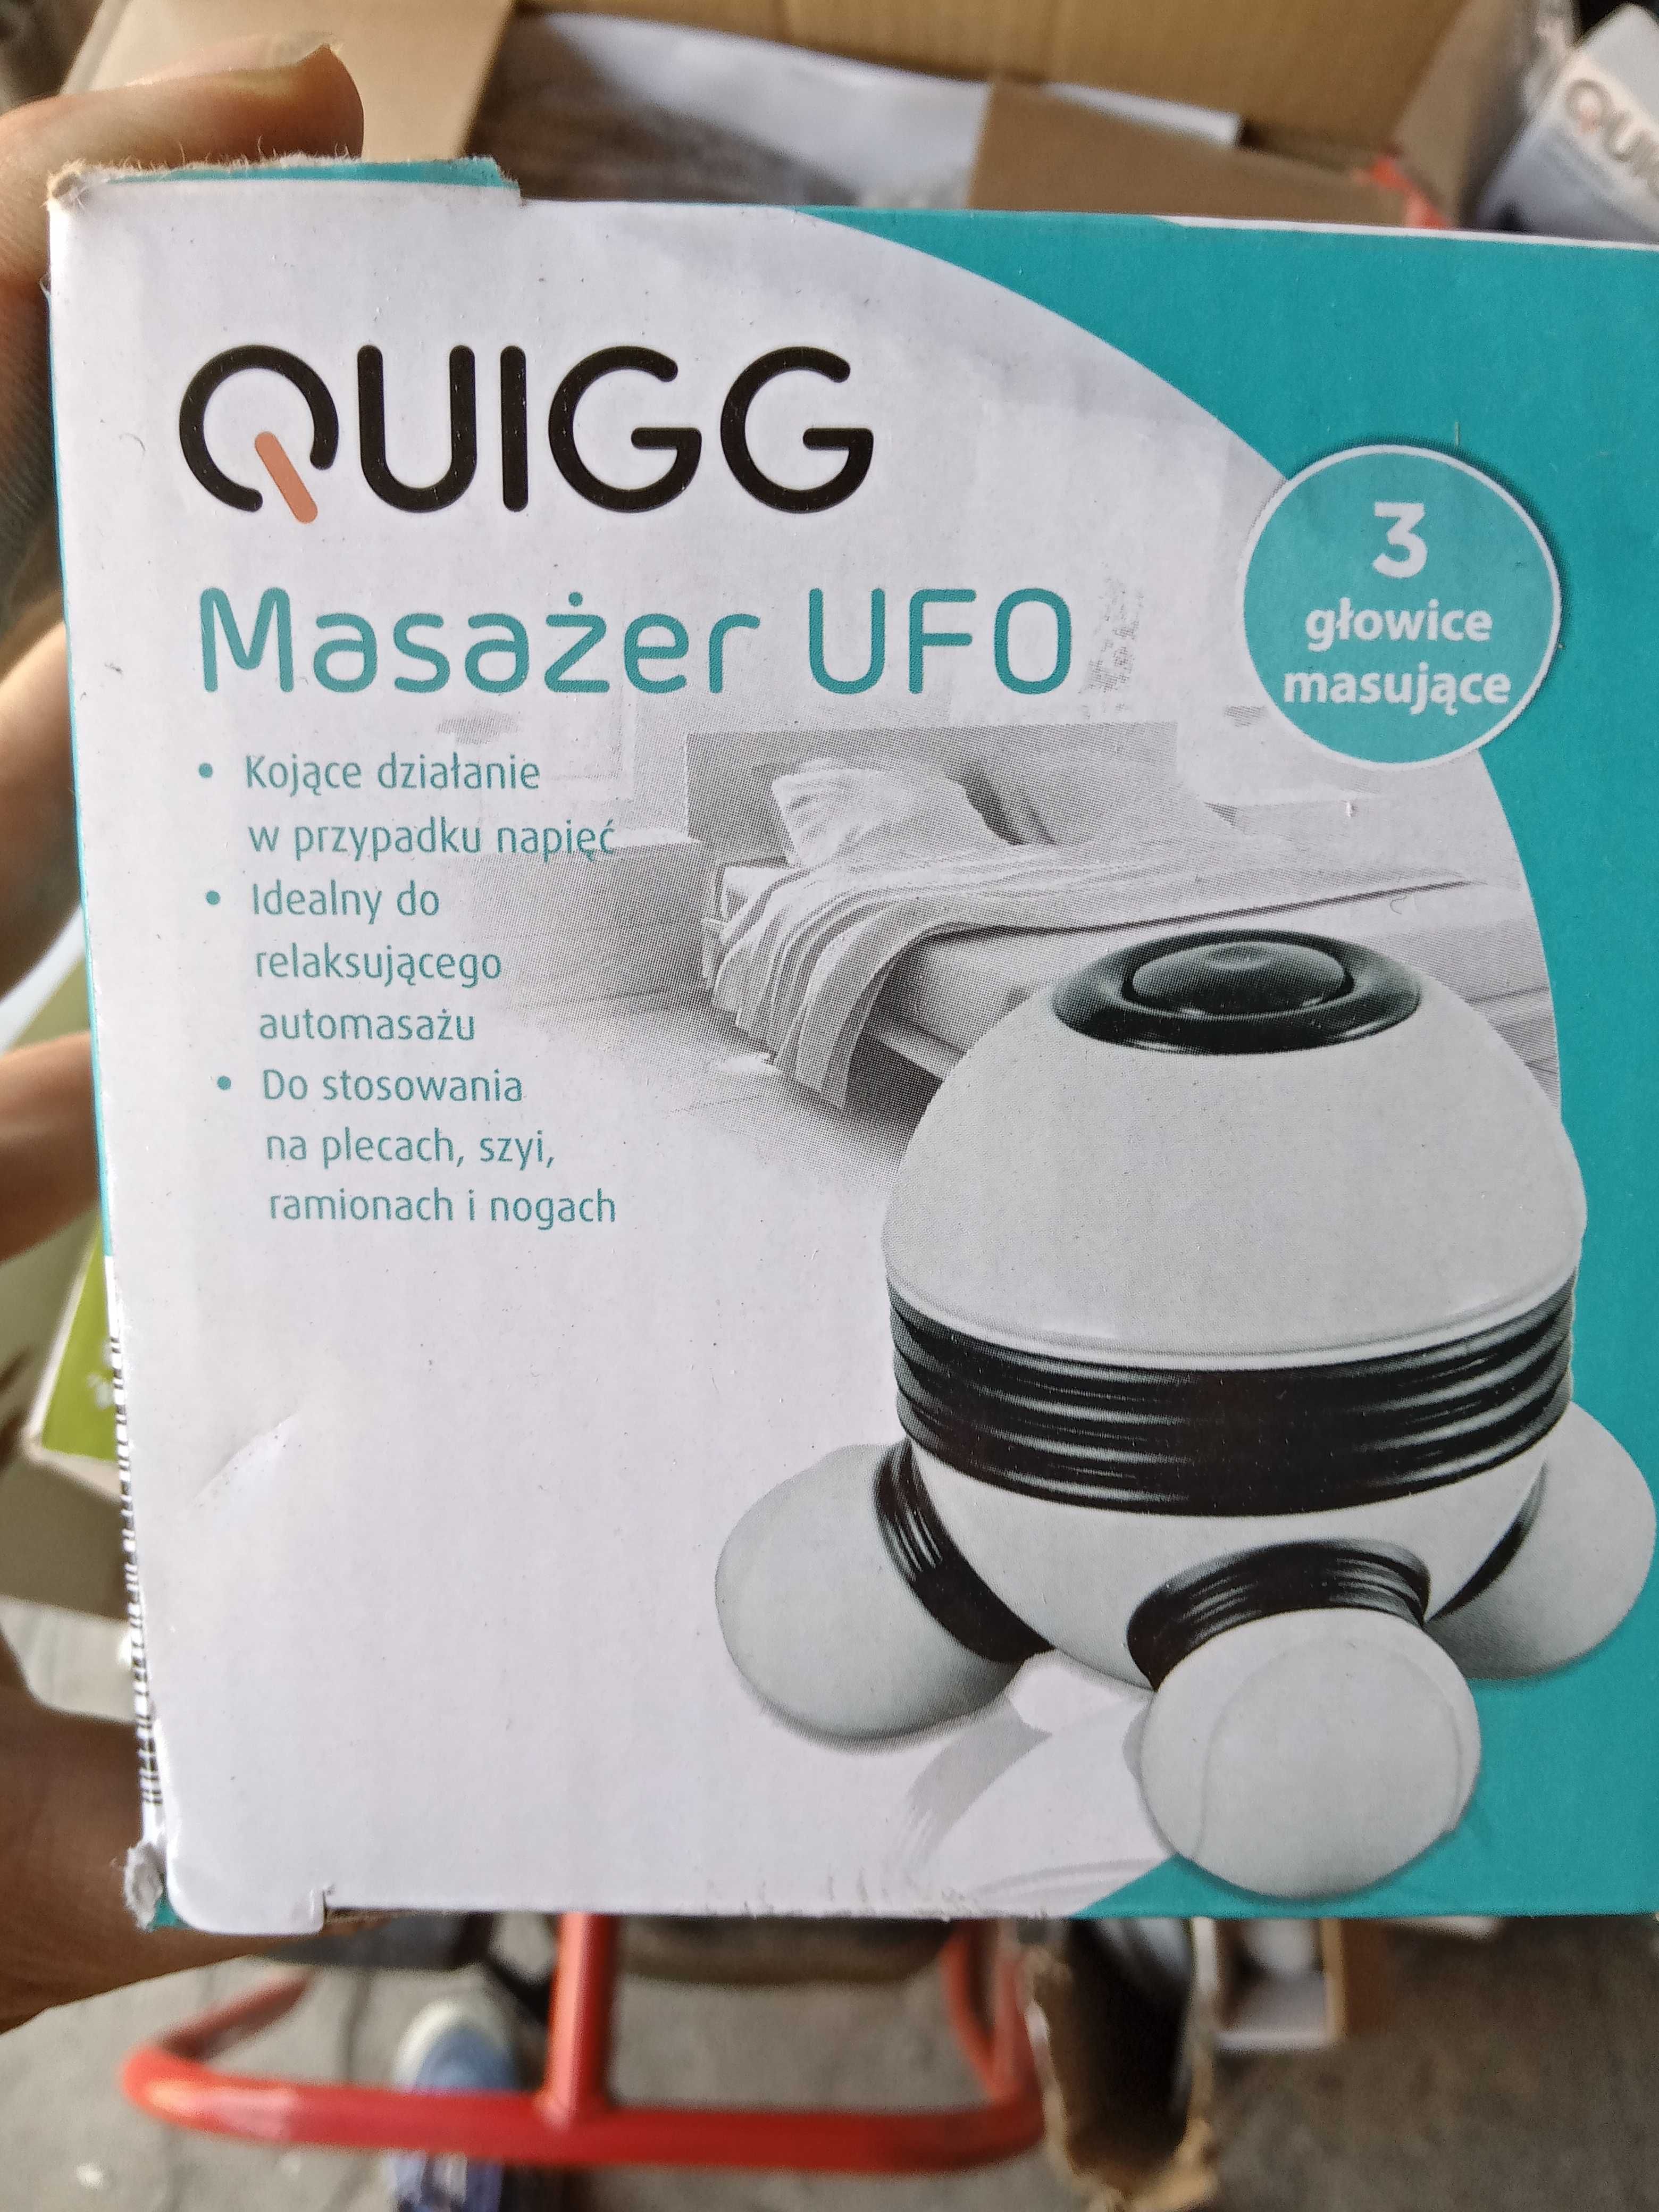 Masażer Ufo Quigg